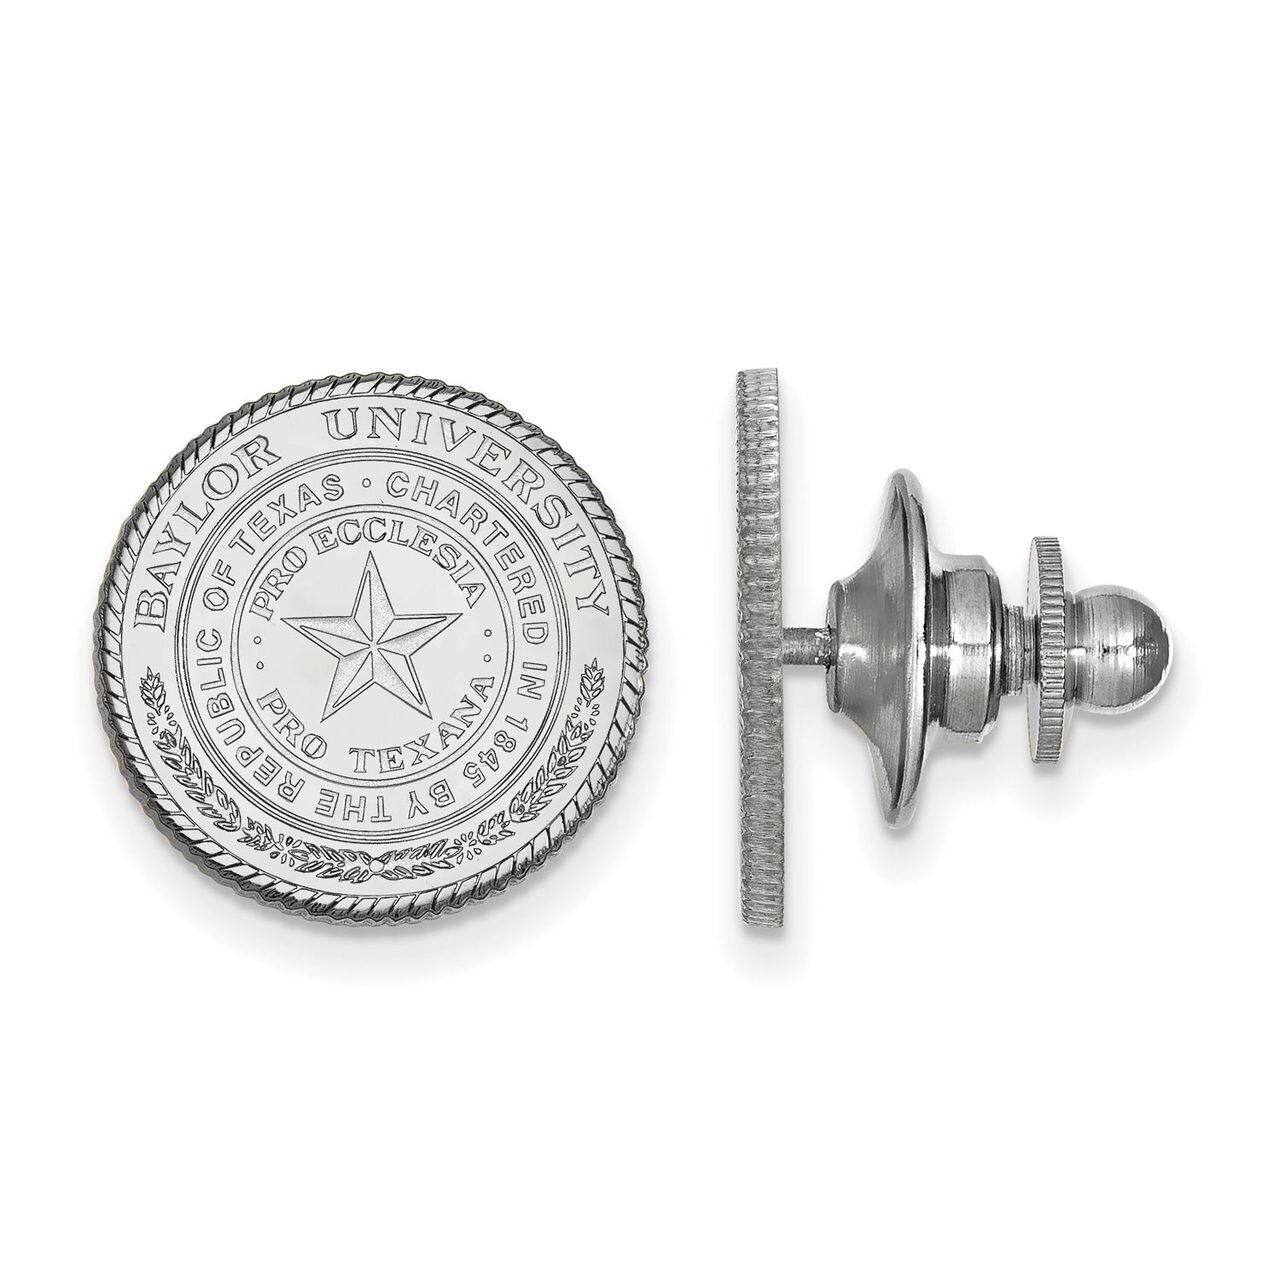 Baylor University Crest Lapel Pin Sterling Silver SS039BU